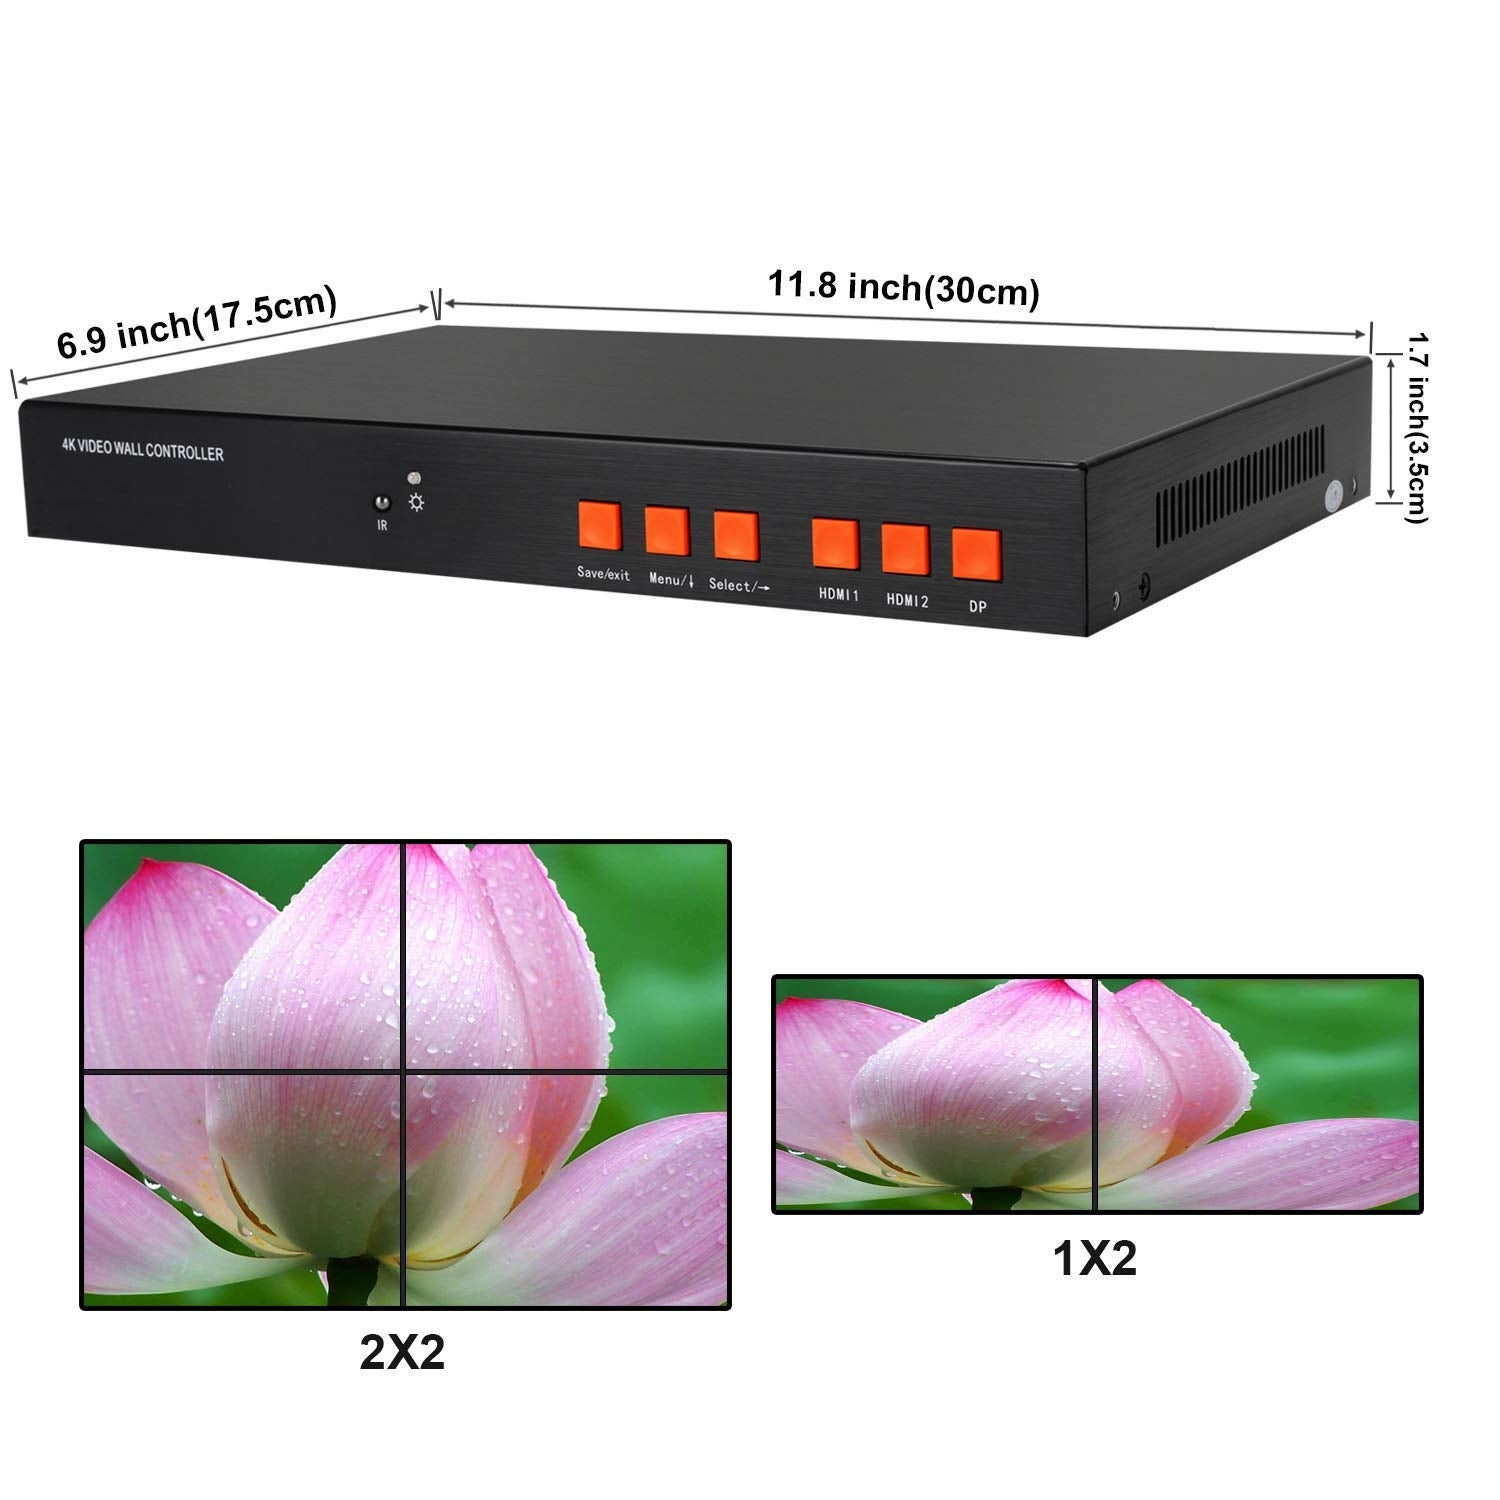 16-6889-04-4K 2x2 4K Video Wall Controller